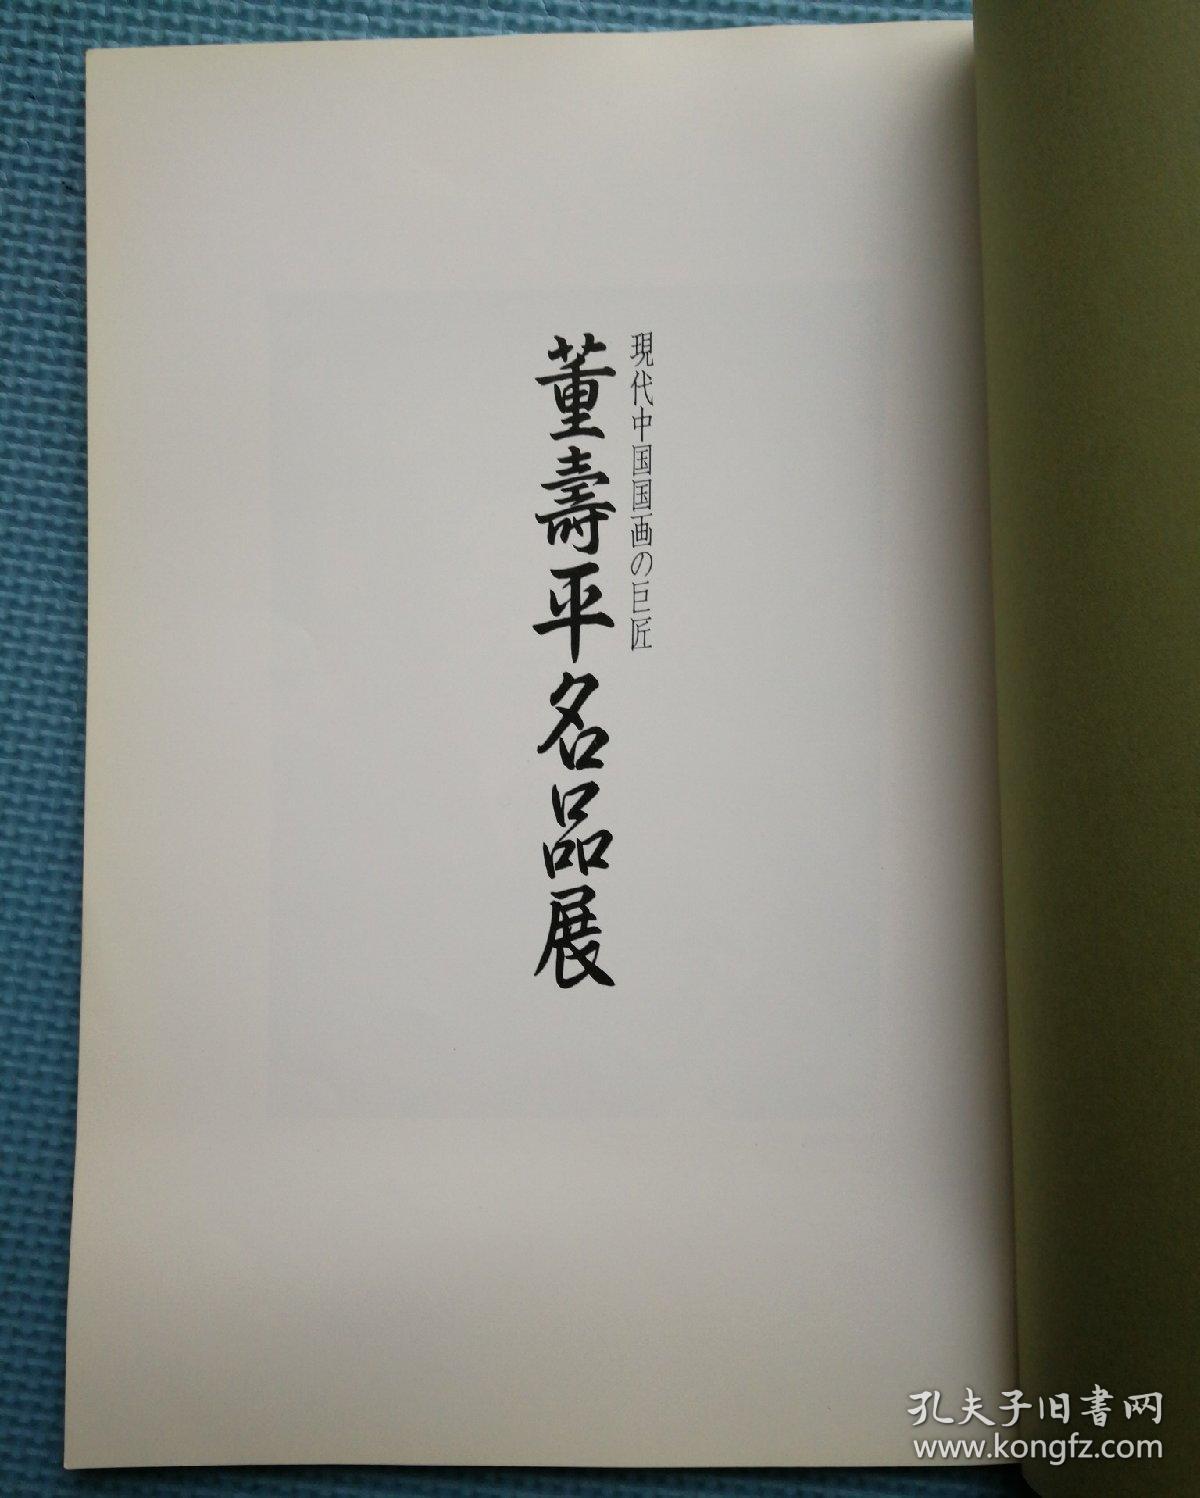 董寿平名品展  株式会社便利堂——1992年日本展览画册